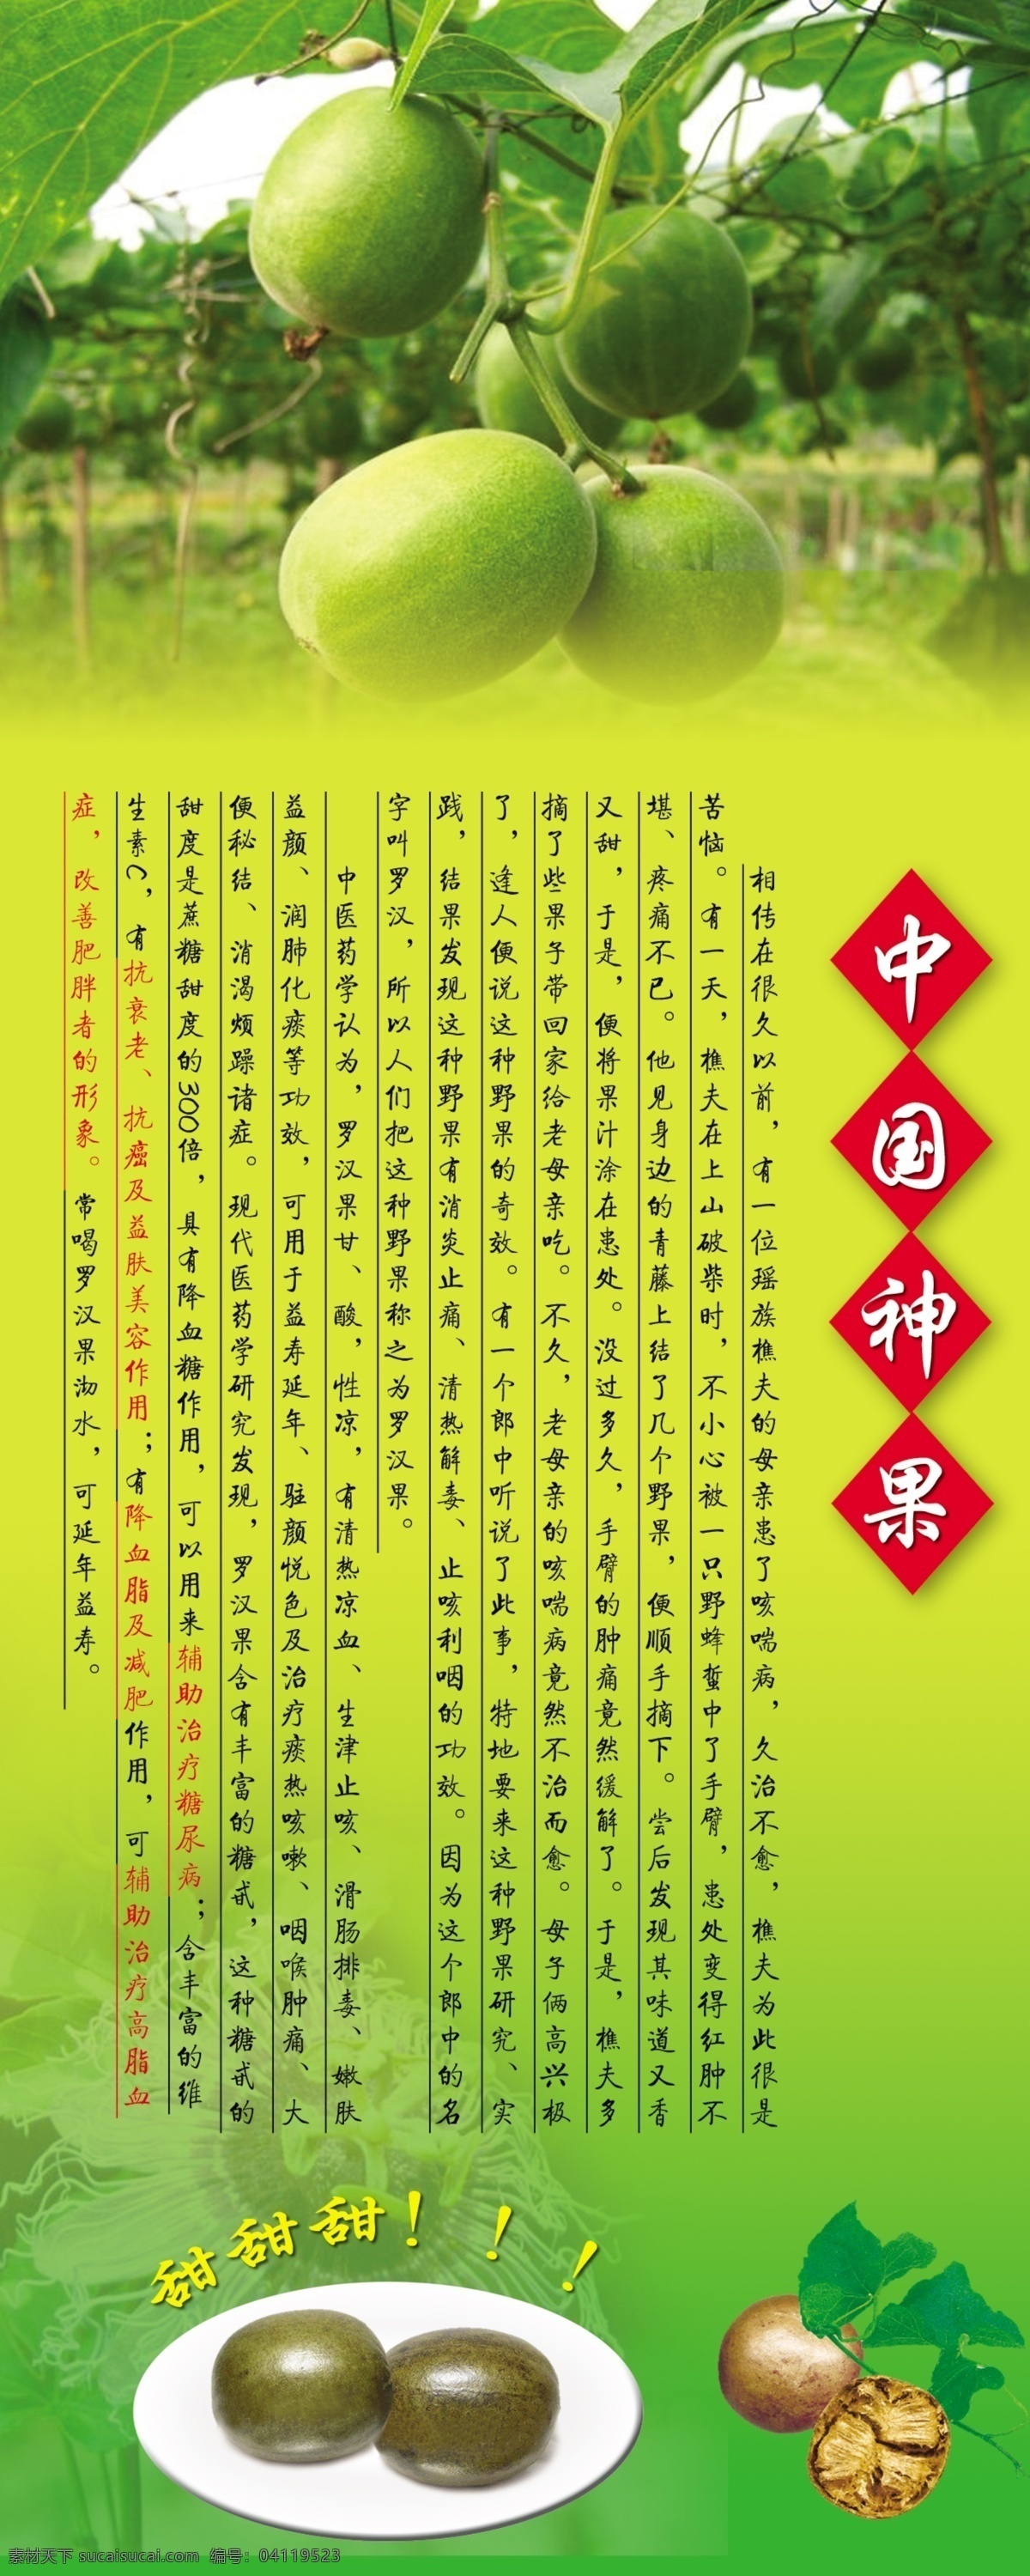 罗汉果展架 展示 中国神果 泡茶神果